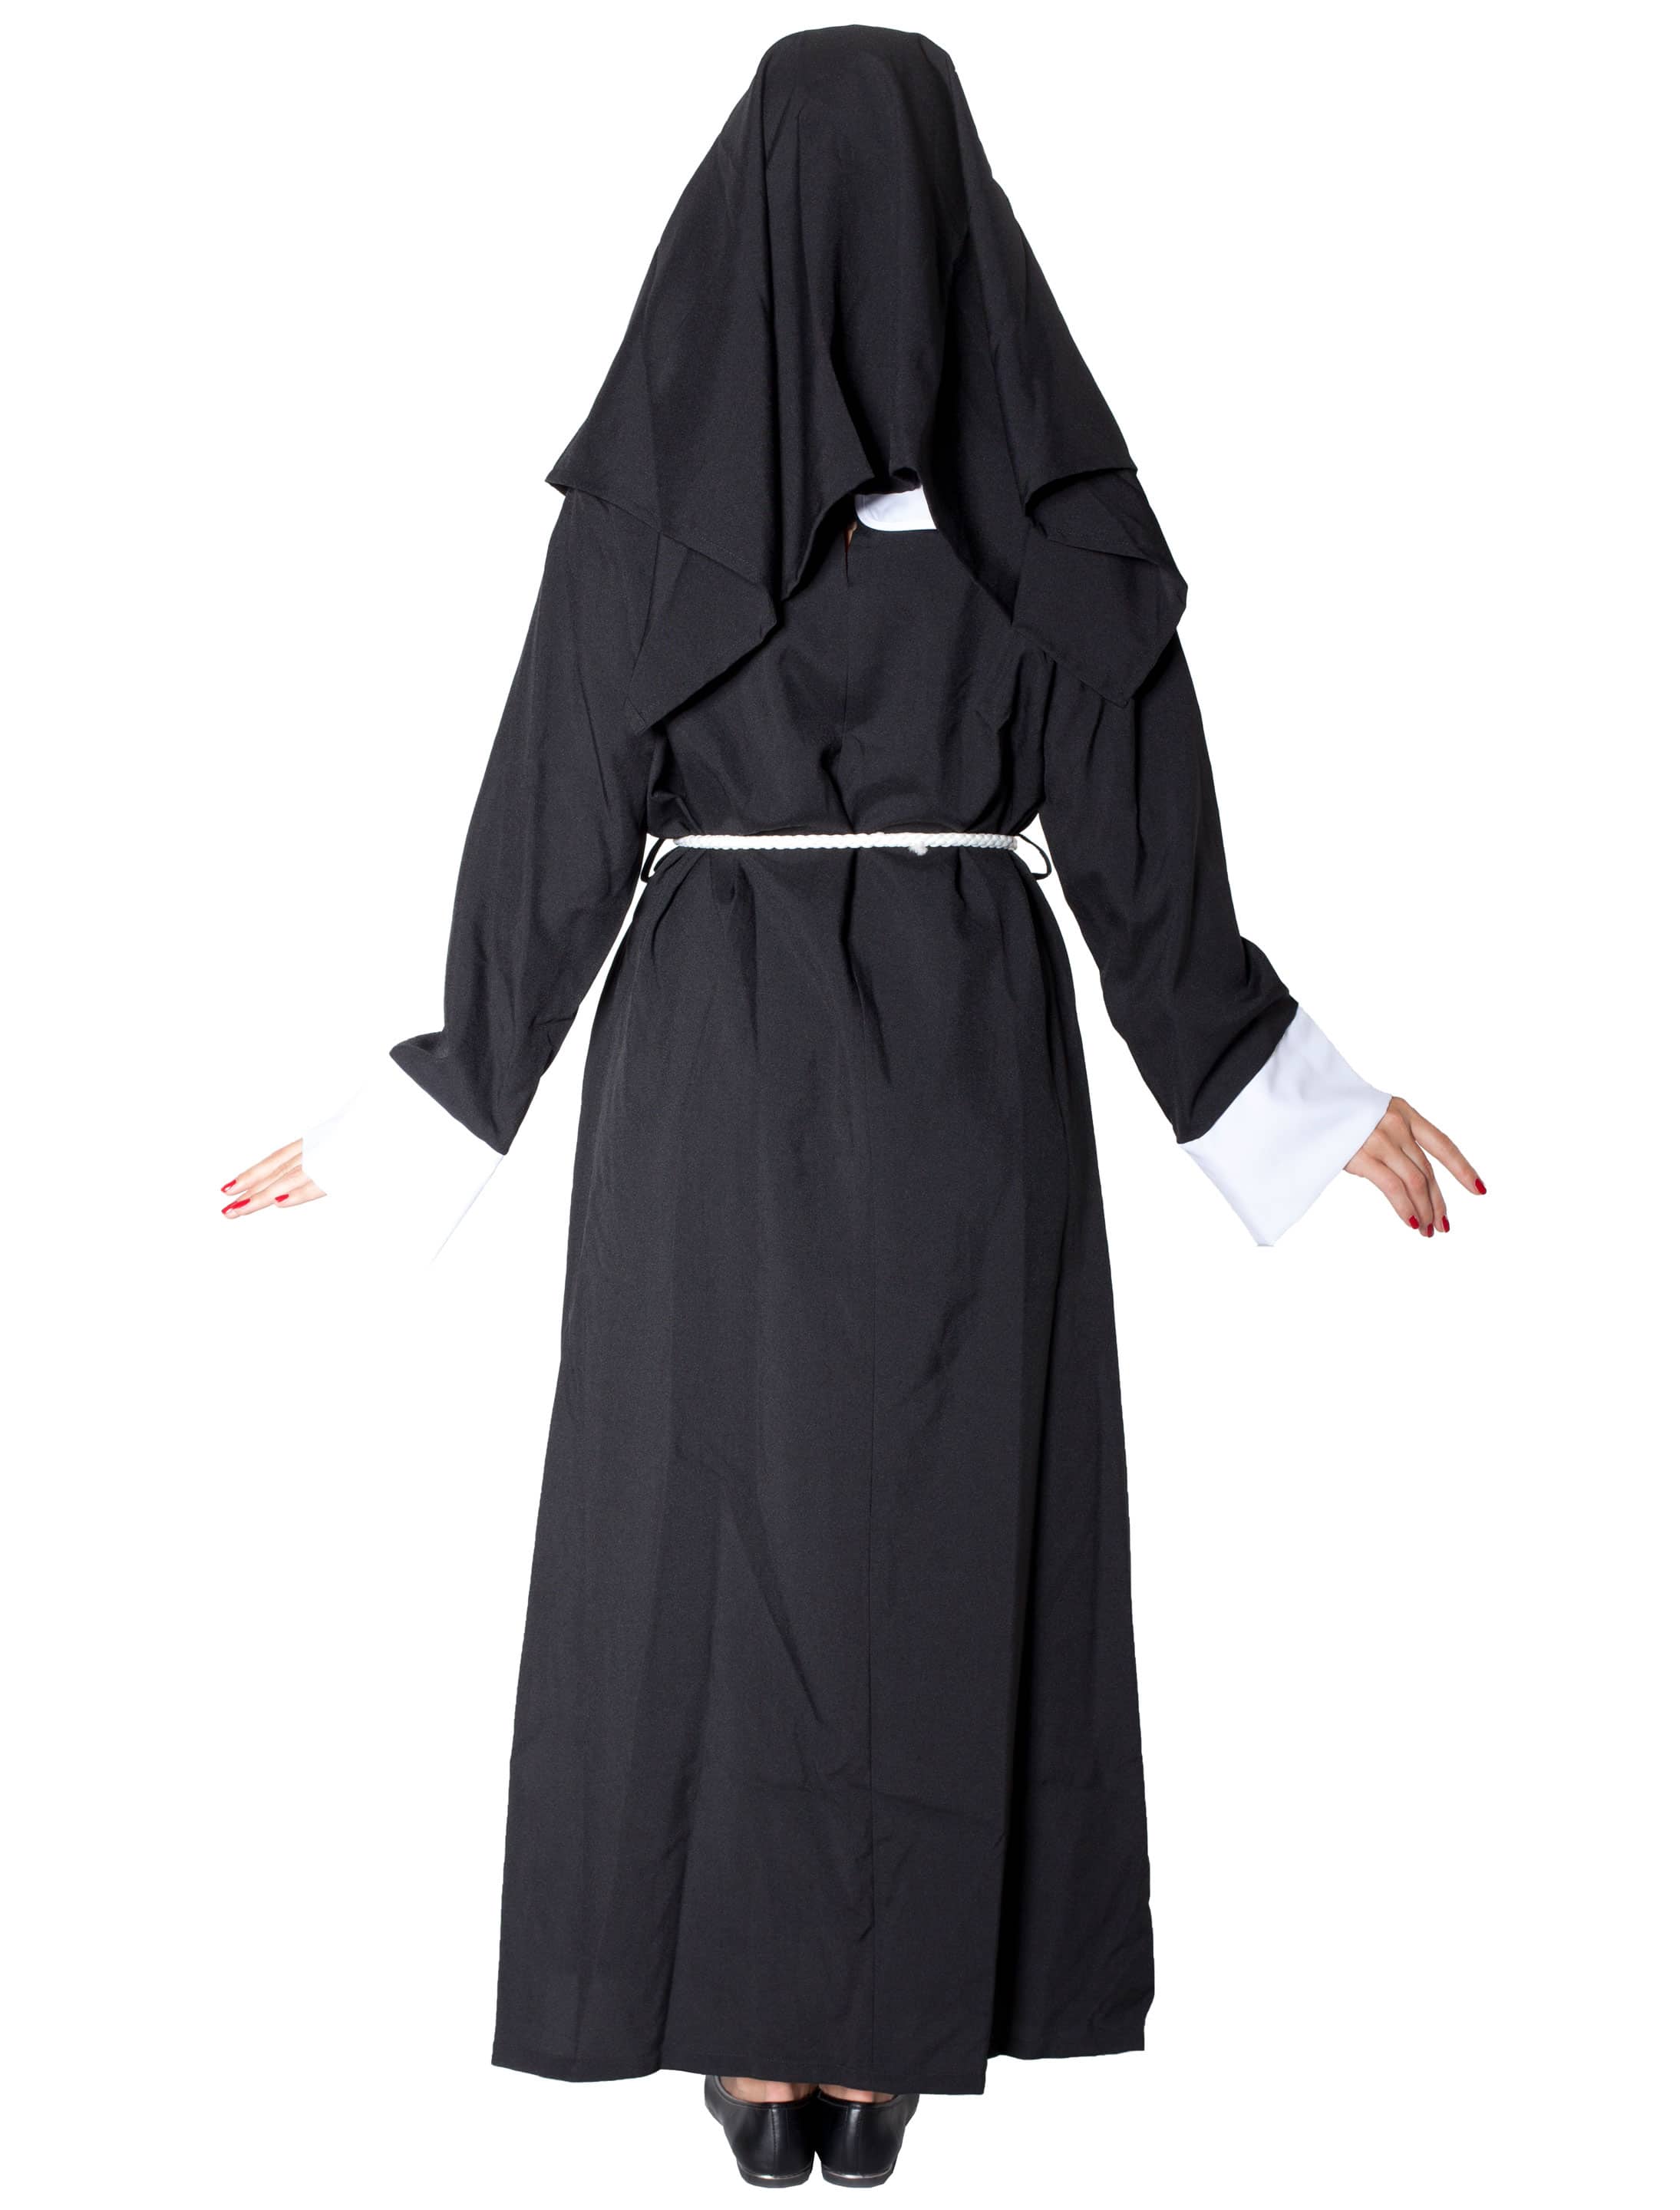 Nonne Damen 3-tlg. schwarz/weiß 46